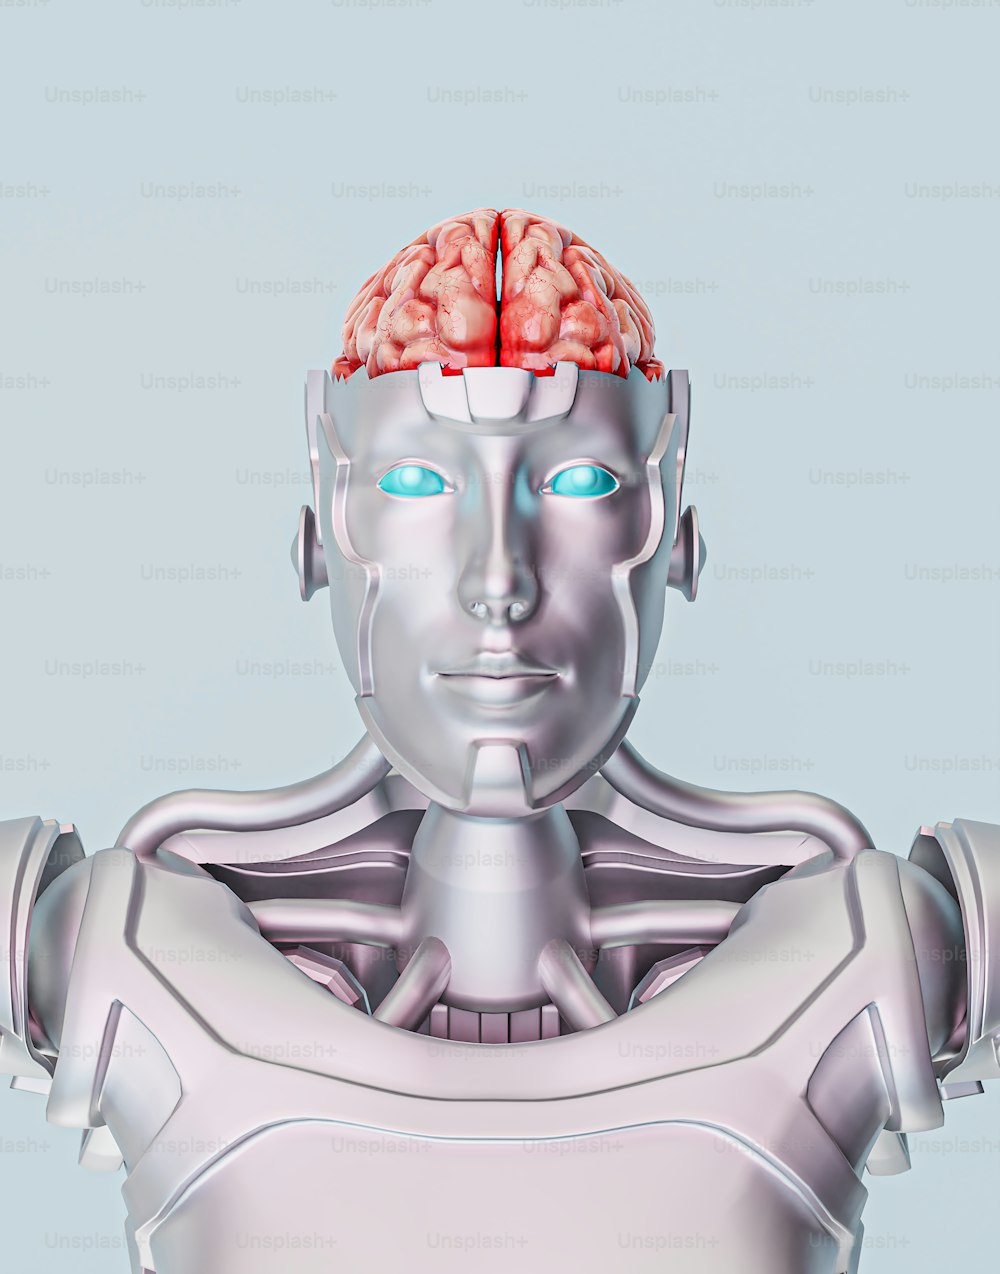 Un robot con una luz roja en la cabeza